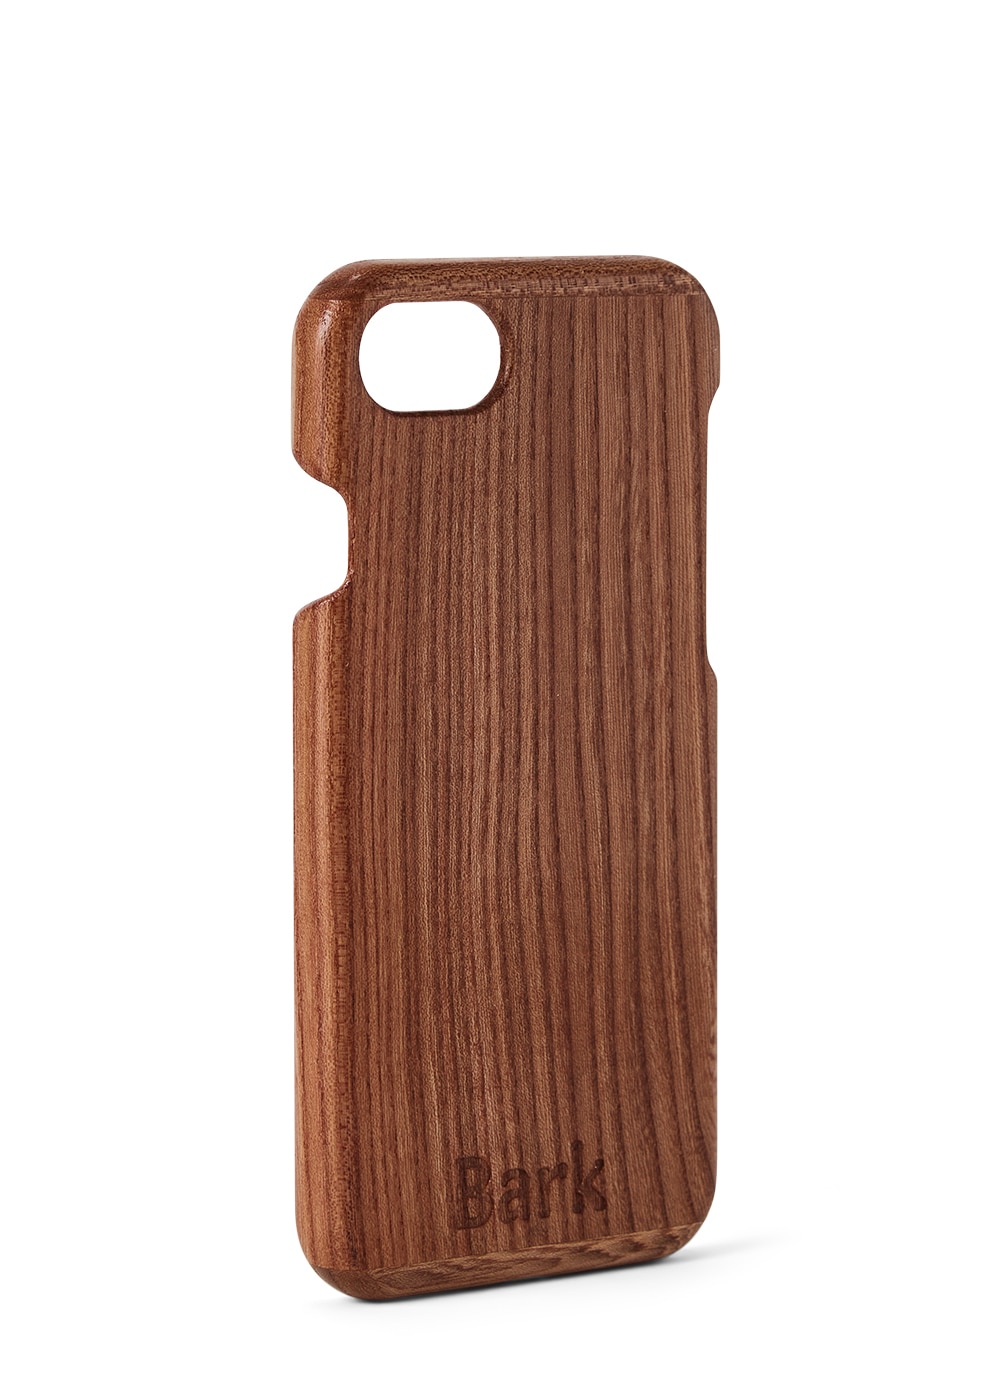 iPhone 8 coque en bois de feuillus suédois - Alm